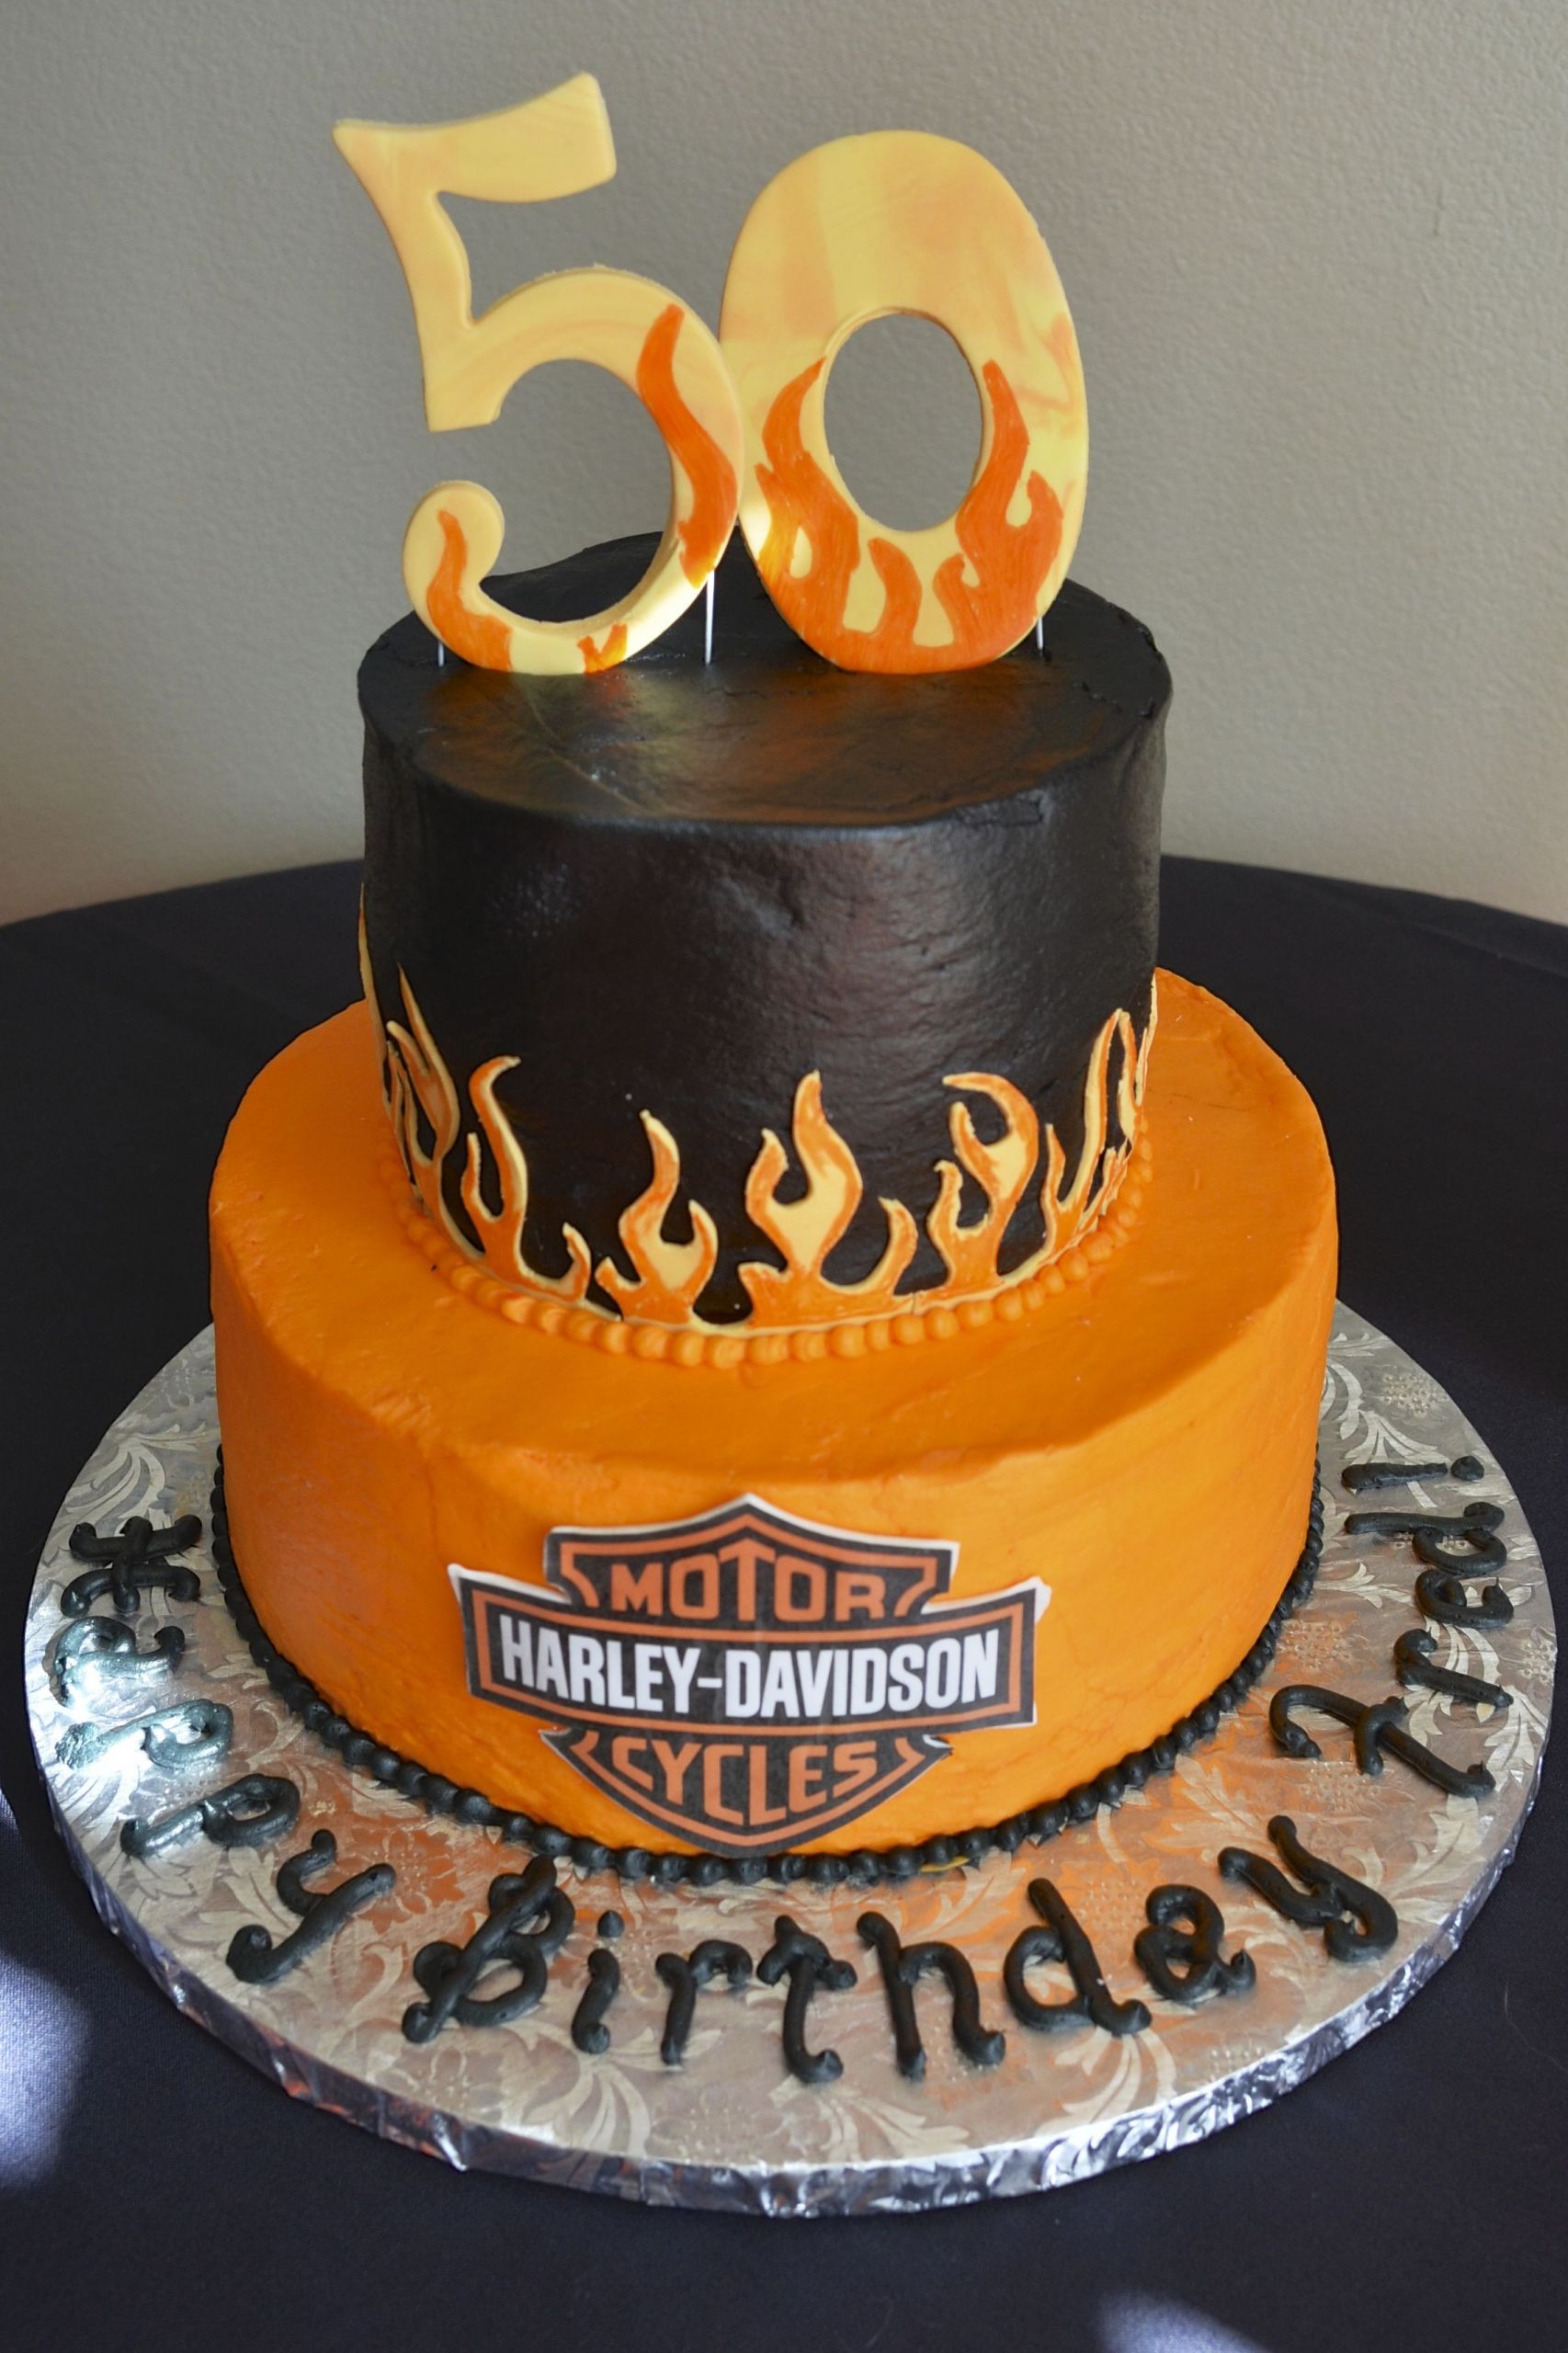 Harley Davidson Birthday Cake
 Harley Davidson Birthday Cake